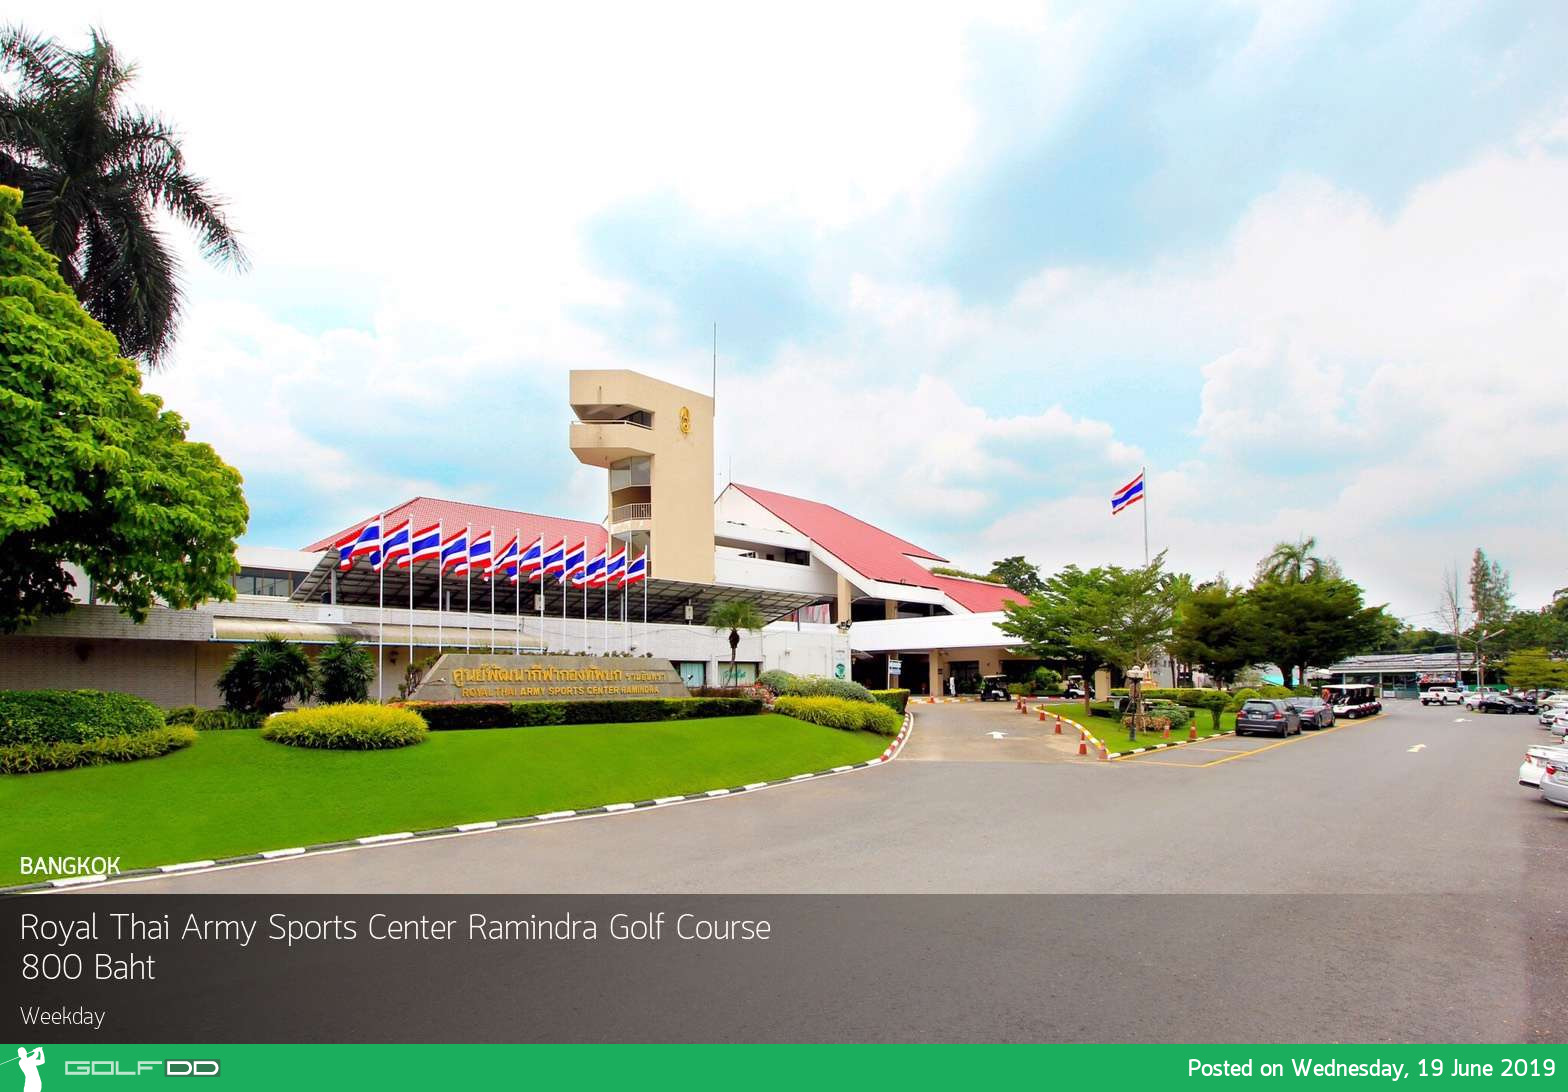 จะรออะไร ถ้าใจอยากออกรอบ เชิญที่ Royal Thai Army Sports Center Ramindra Golf Course พร้อมจองออกรอบที่ Golfdd จ่ายเงินได้ที่สนามกอล์ฟ 